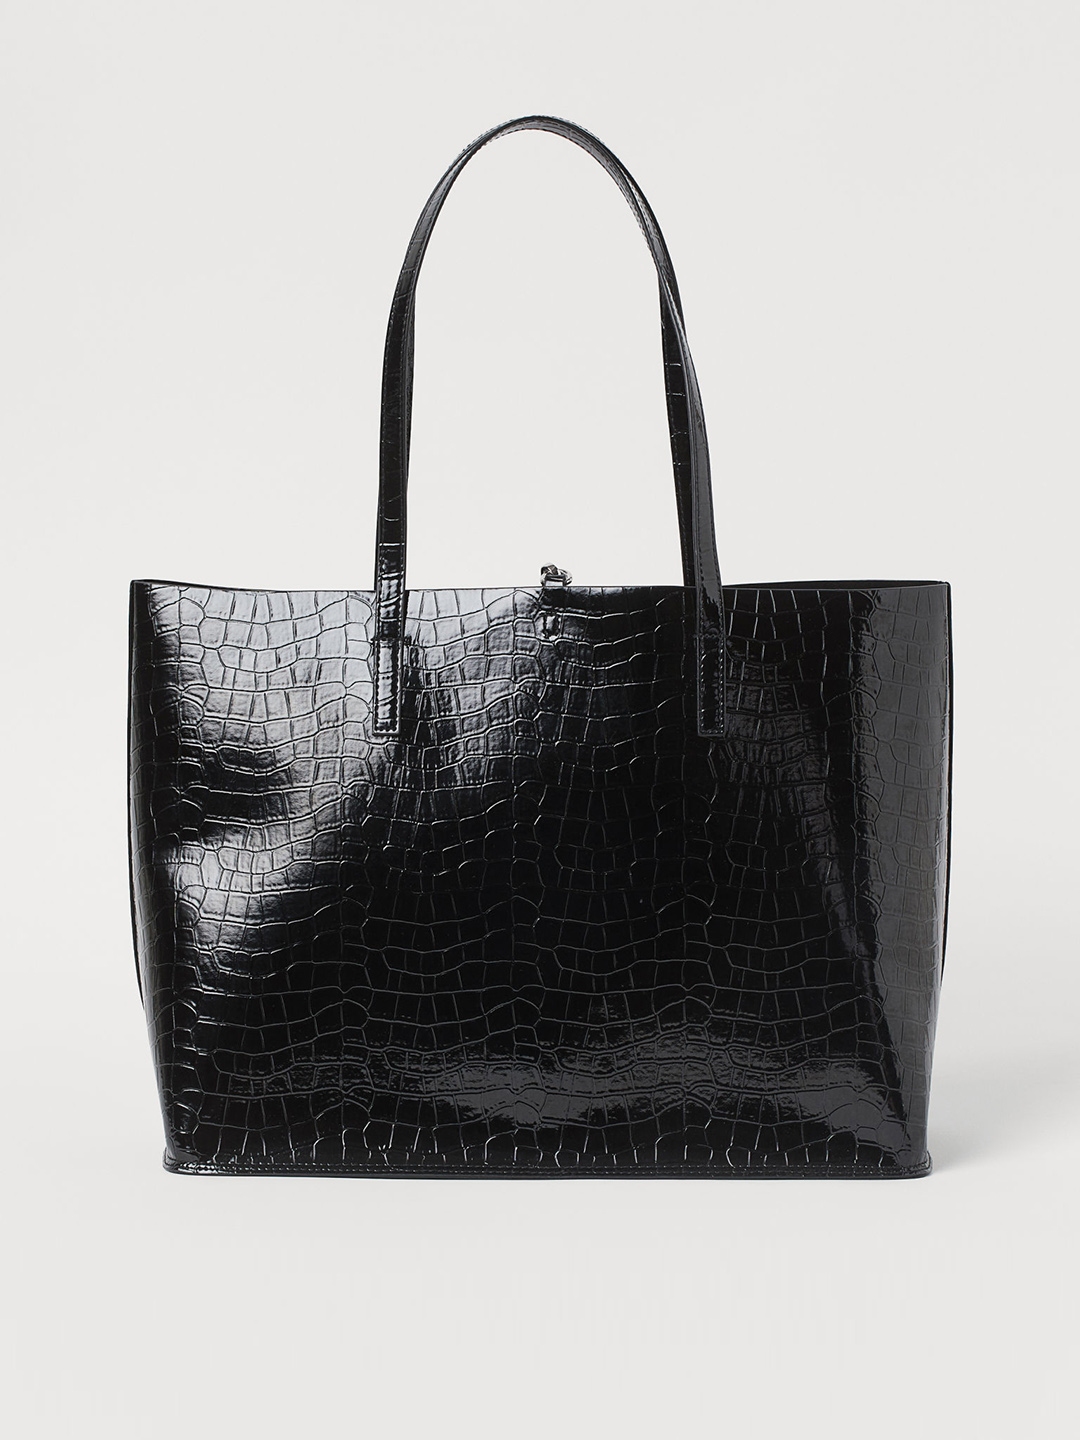 H&M Women's Tote Bags - Bags